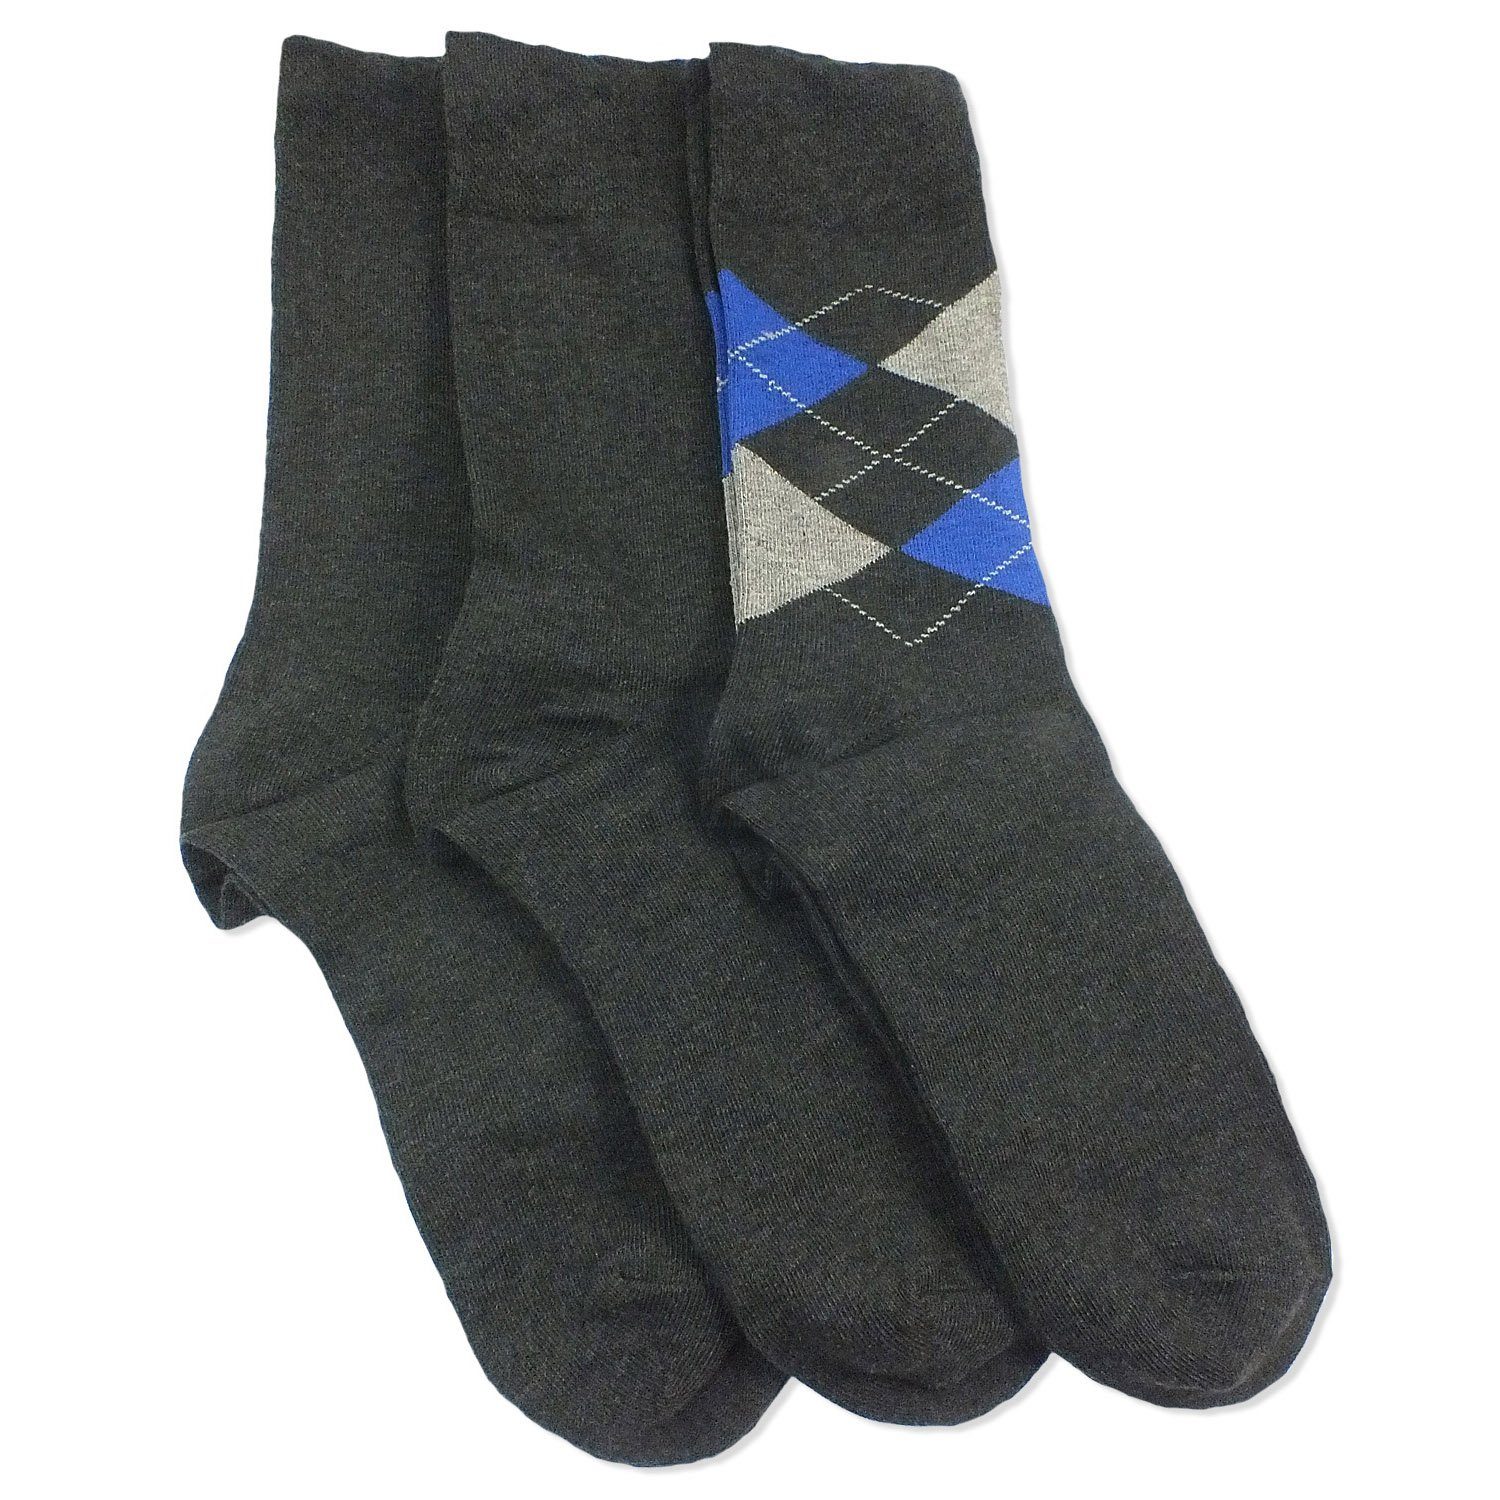 Camano Langsocken CA4903 (Packung, 3-Paar, 3 Paar) Herren Damen Unisex Business Socken Baumwolle Geschenkverpackung 08 anthracite